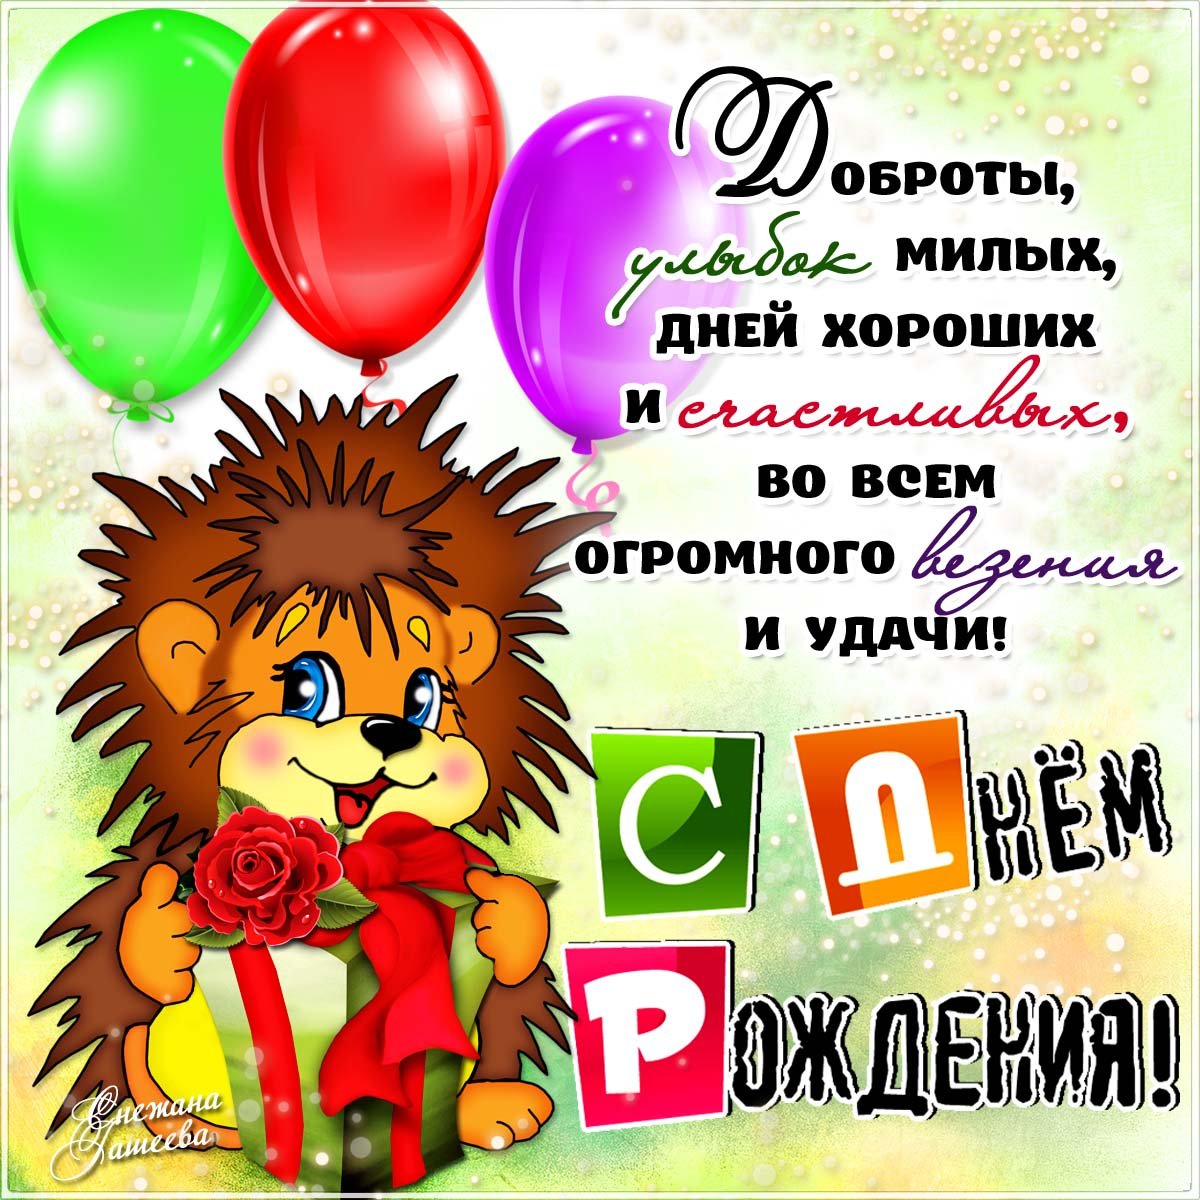 Трогательные поздравления с днем рождения тете от племянника - virtuoz-salon.ru